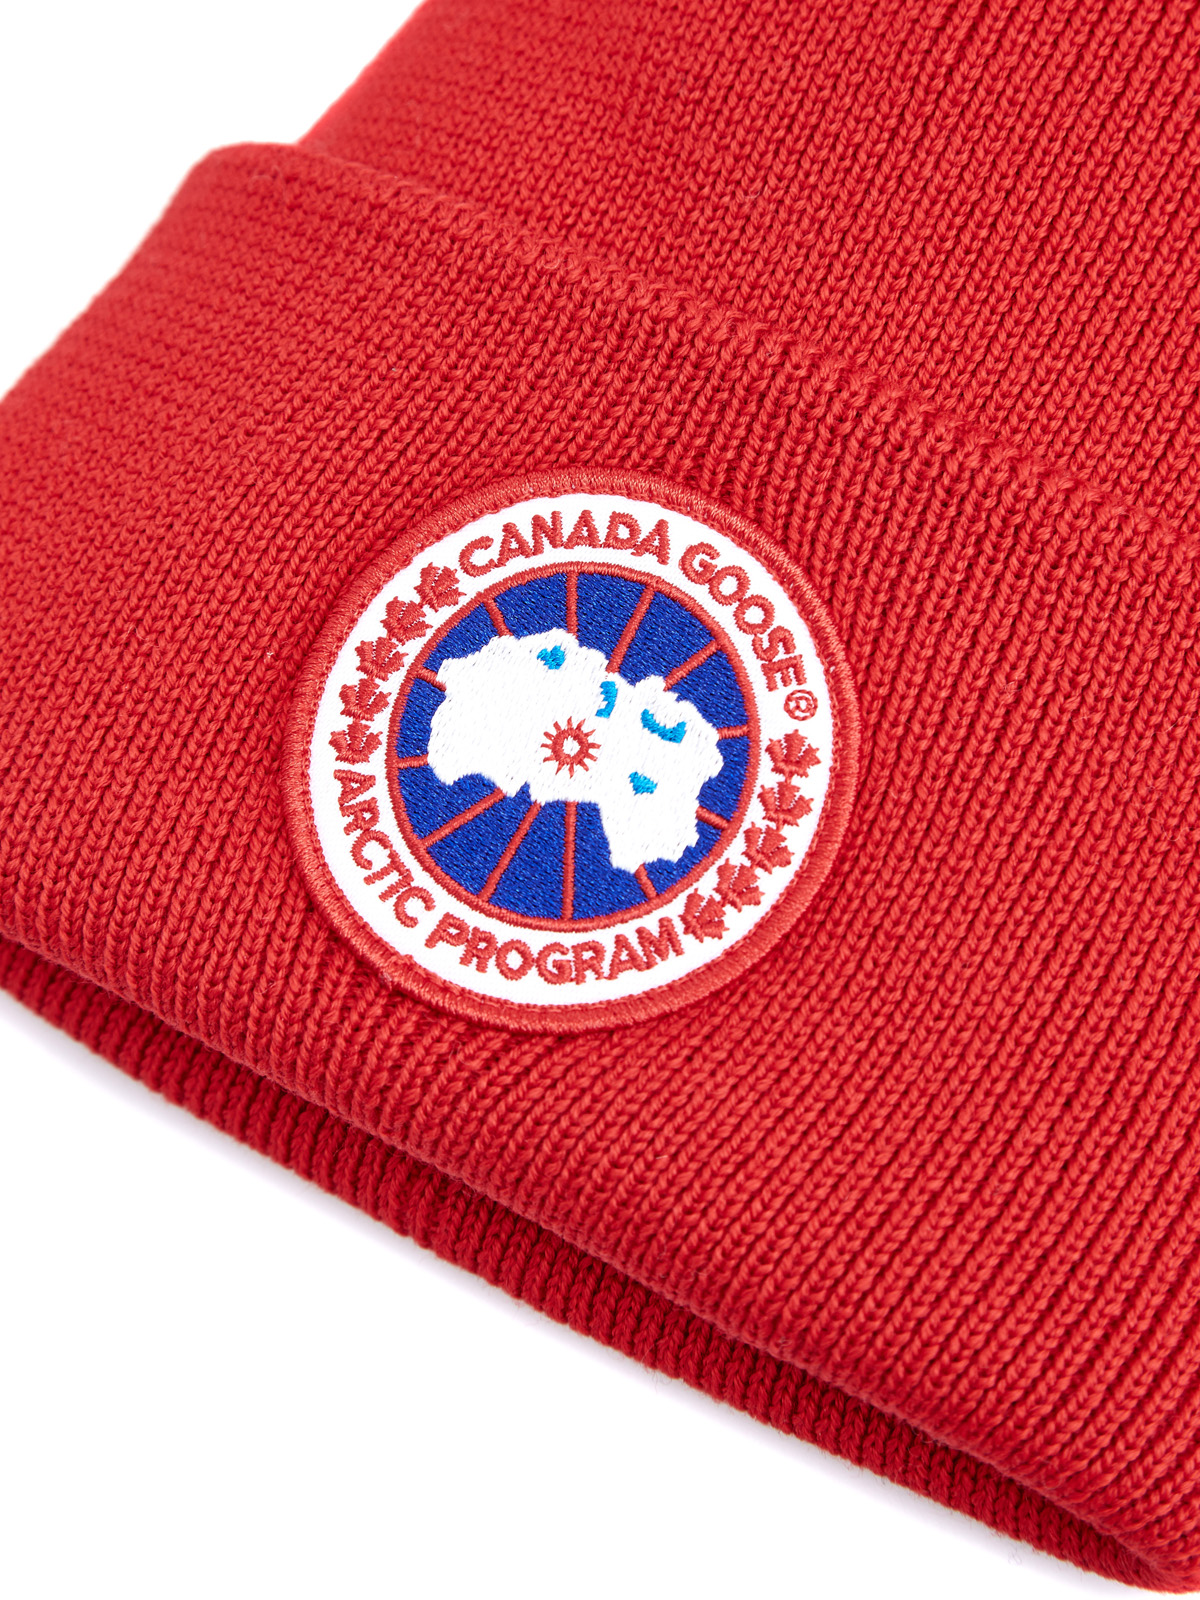 Шапка из шерсти эластичной вязки с логотипом CANADA GOOSE, цвет красный, размер 40 - фото 3